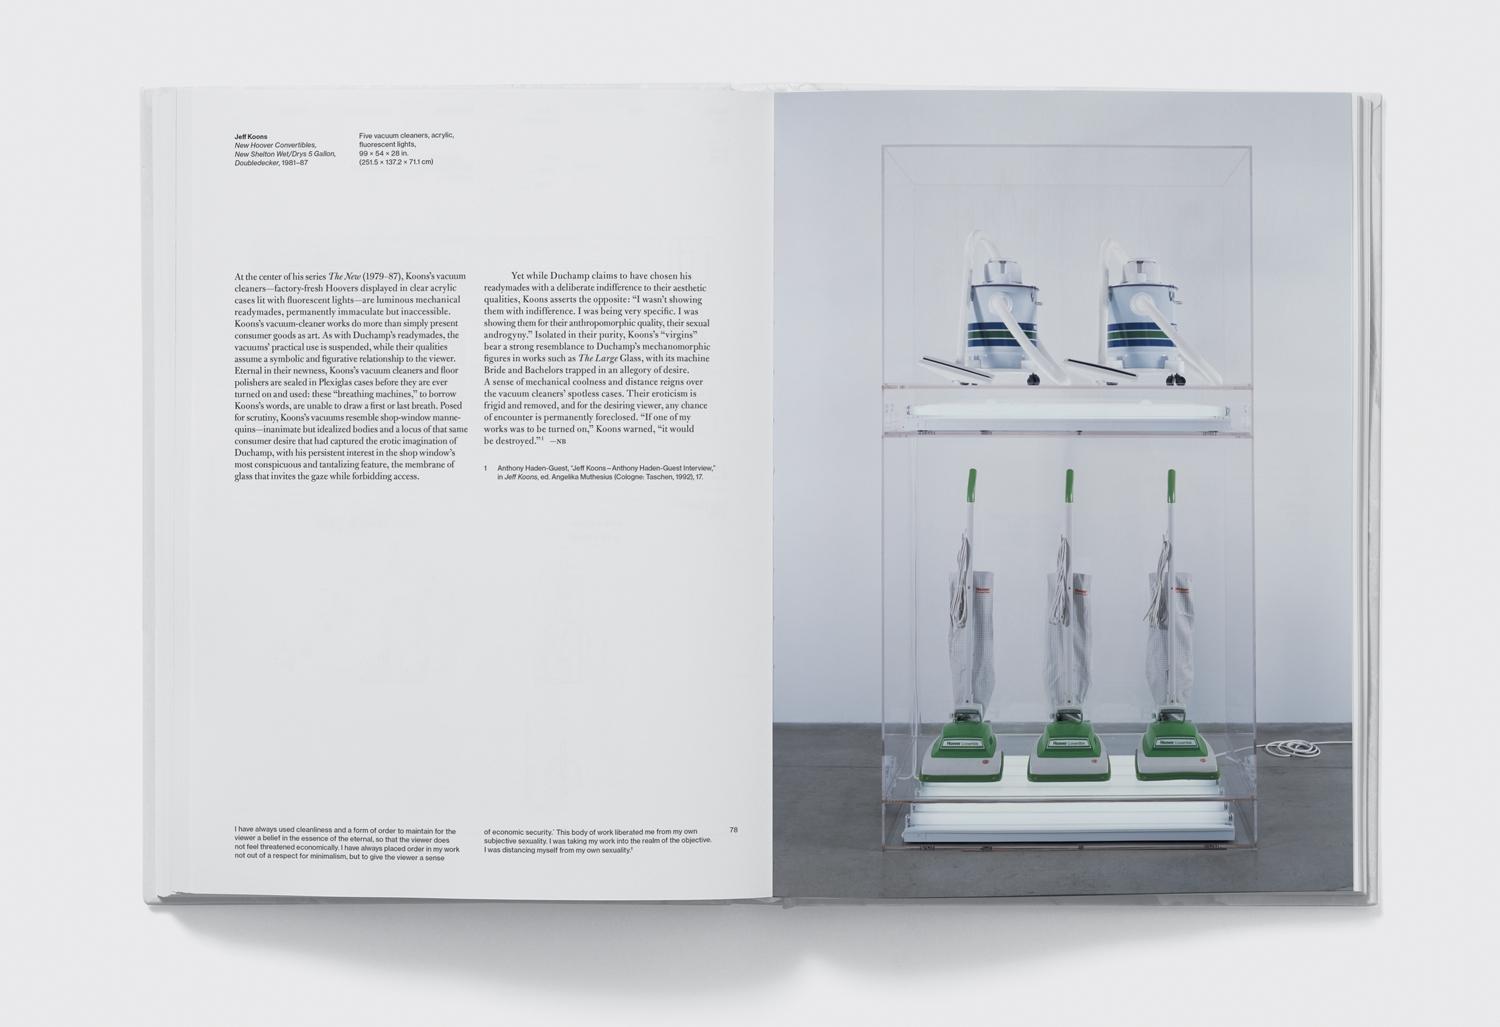 Das erste Buch, das zwei der größten Namen der modernen und zeitgenössischen Kunst Seite an Seite behandelt: Marcel Duchamp und Jeff Koons.
In der ersten Hälfte des 20. Jahrhunderts definierte Marcel Duchamp neu, was wir unter Kunst verstehen und